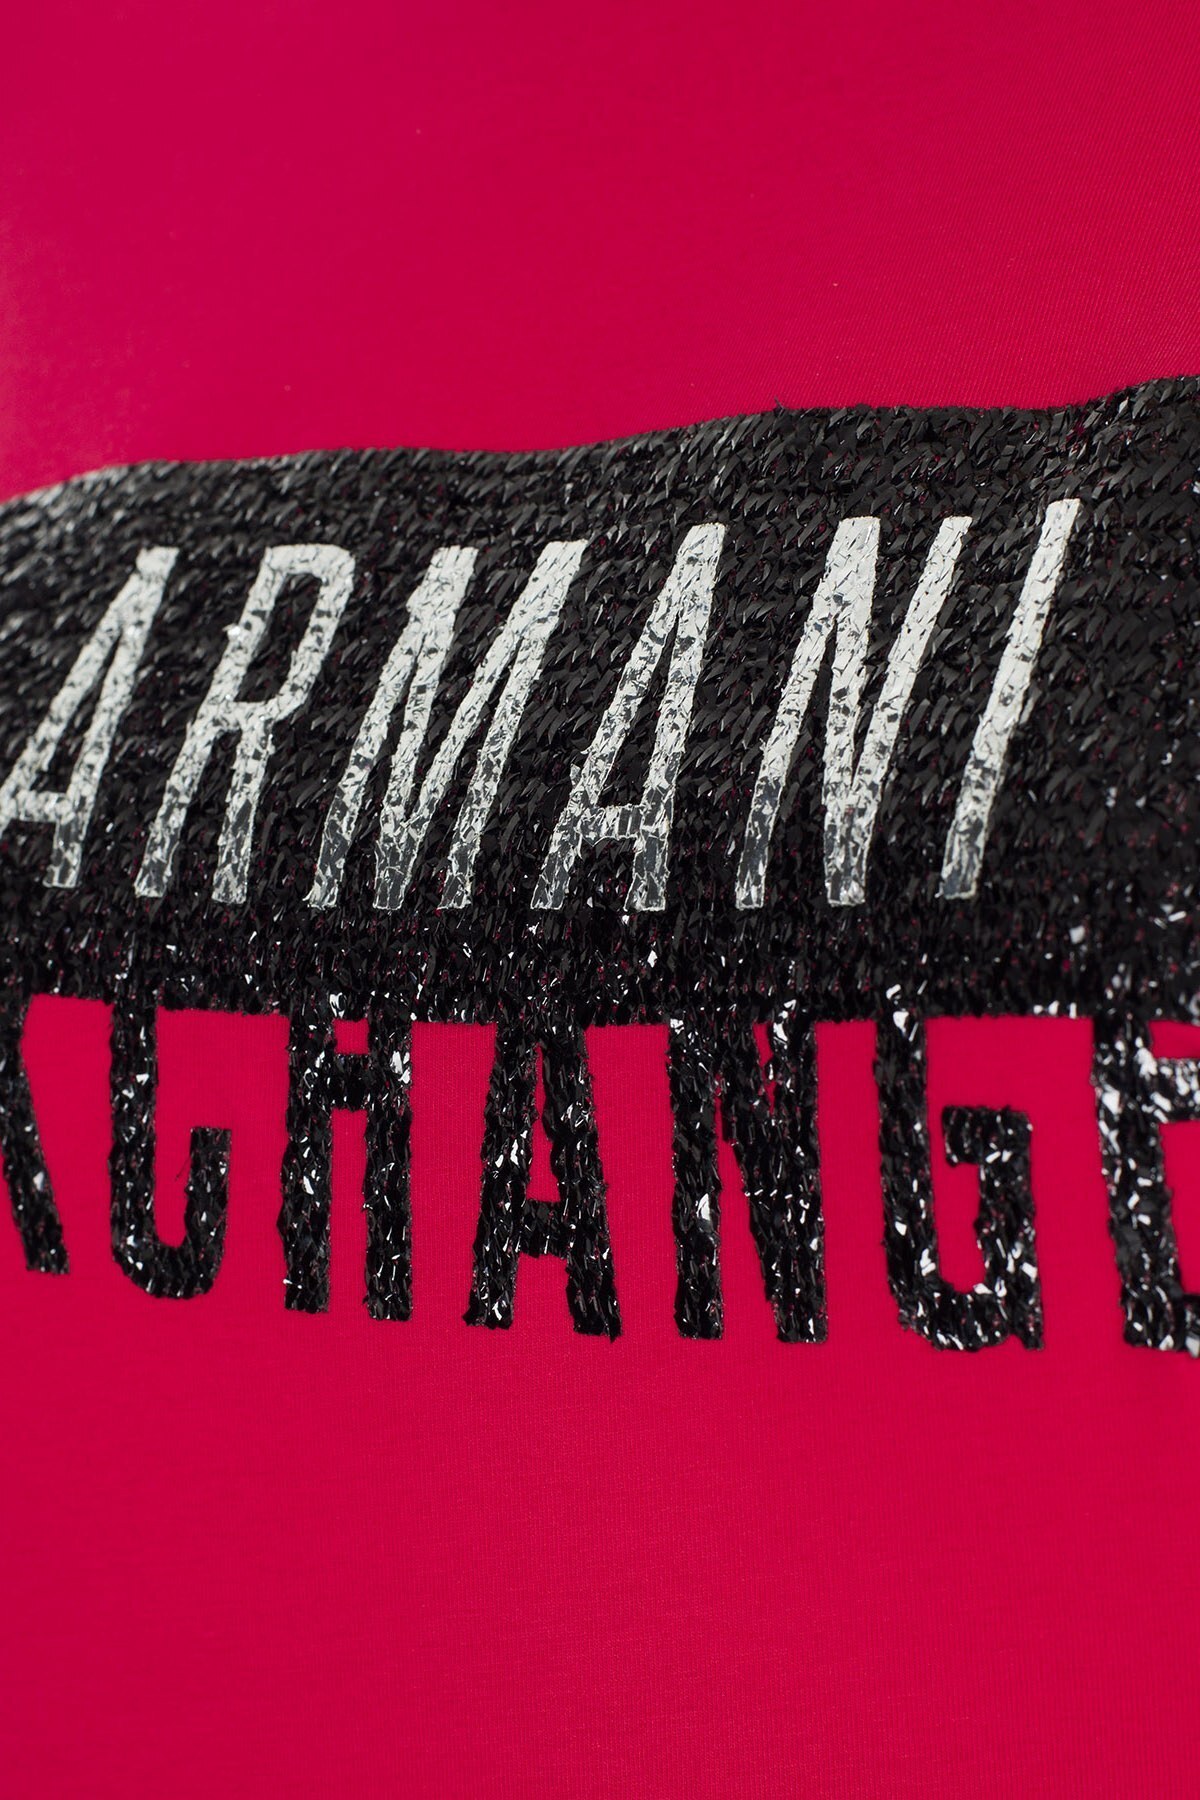 Armani Exchange Bayan T Shirt S 6GYT91 YJC7Z 1469 KIRMIZI